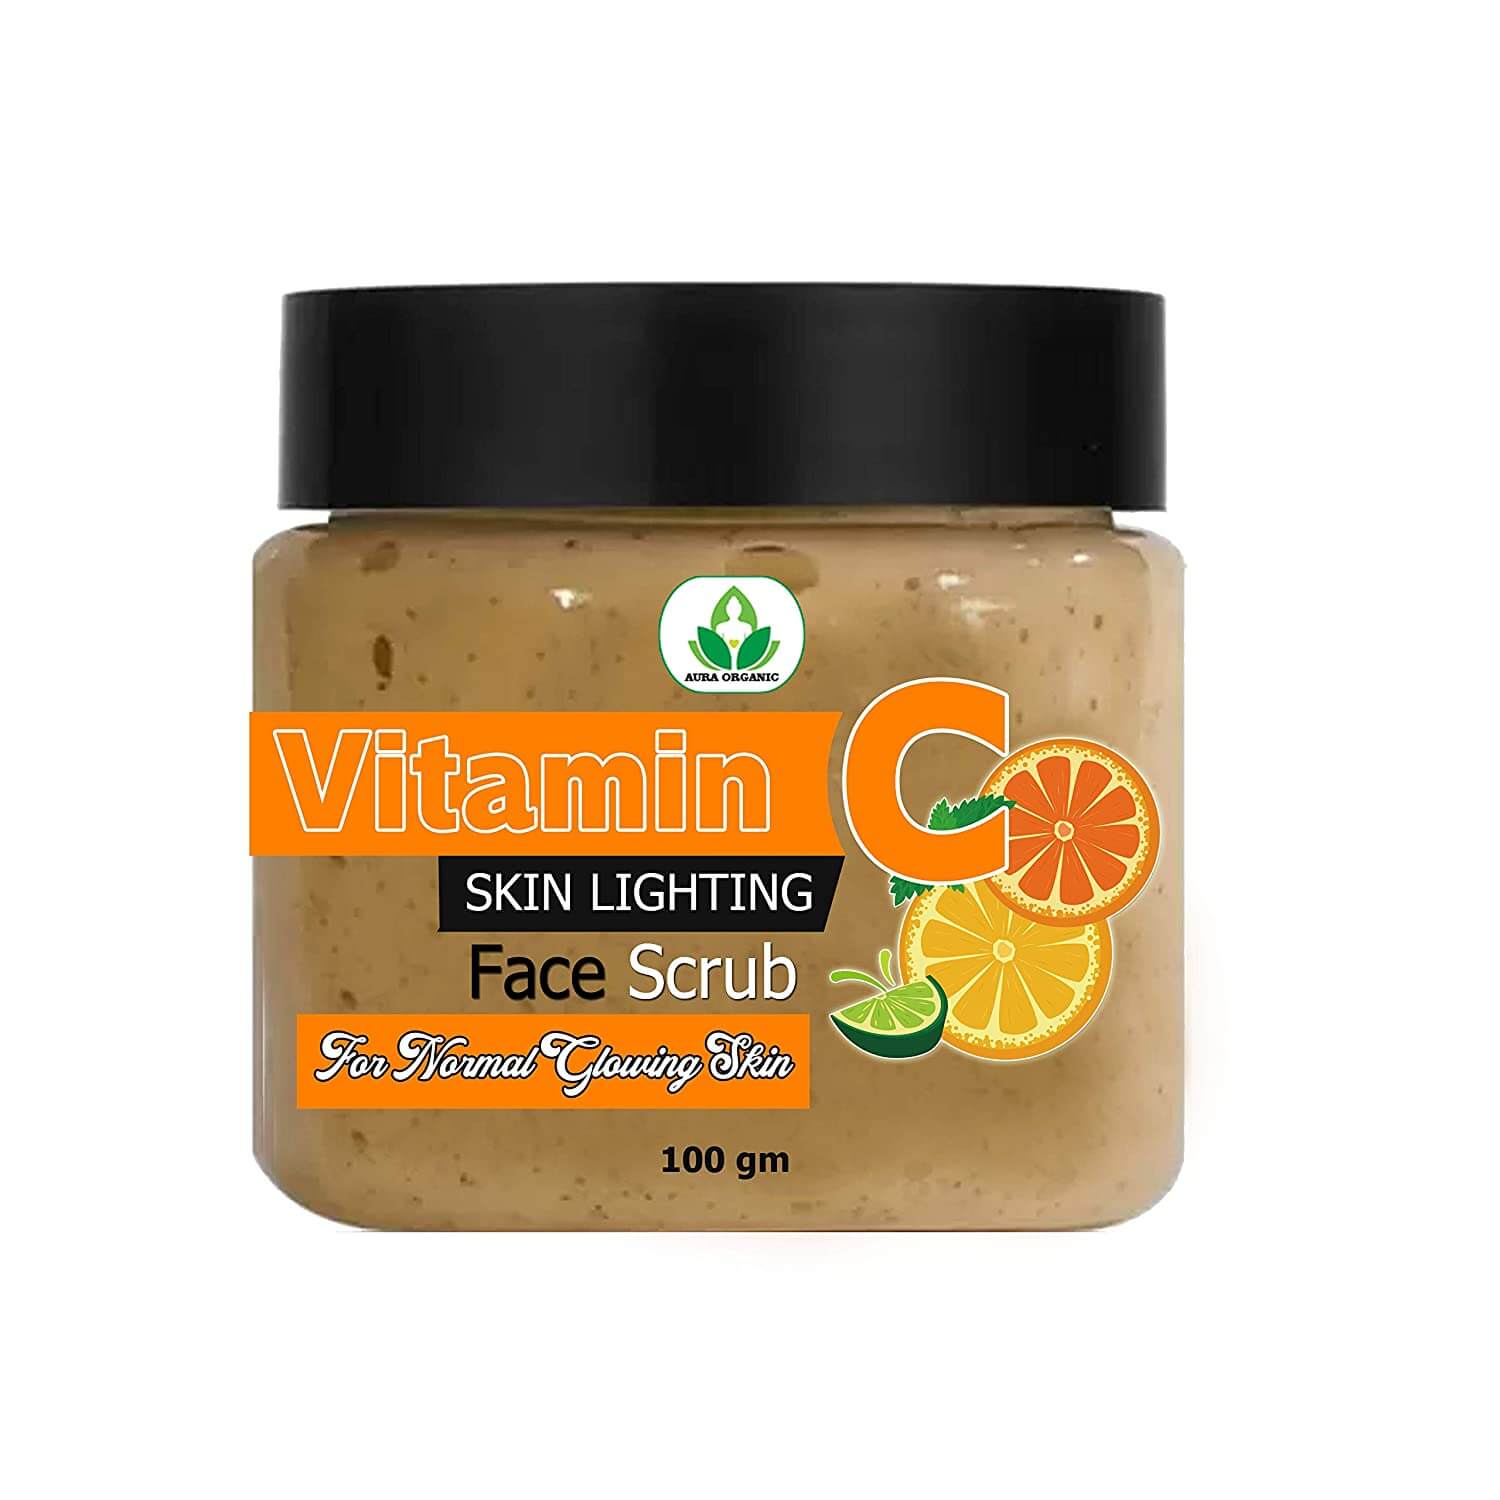 7 DAYS Vitamin C Skin Brightening & Shining Face Scrub 